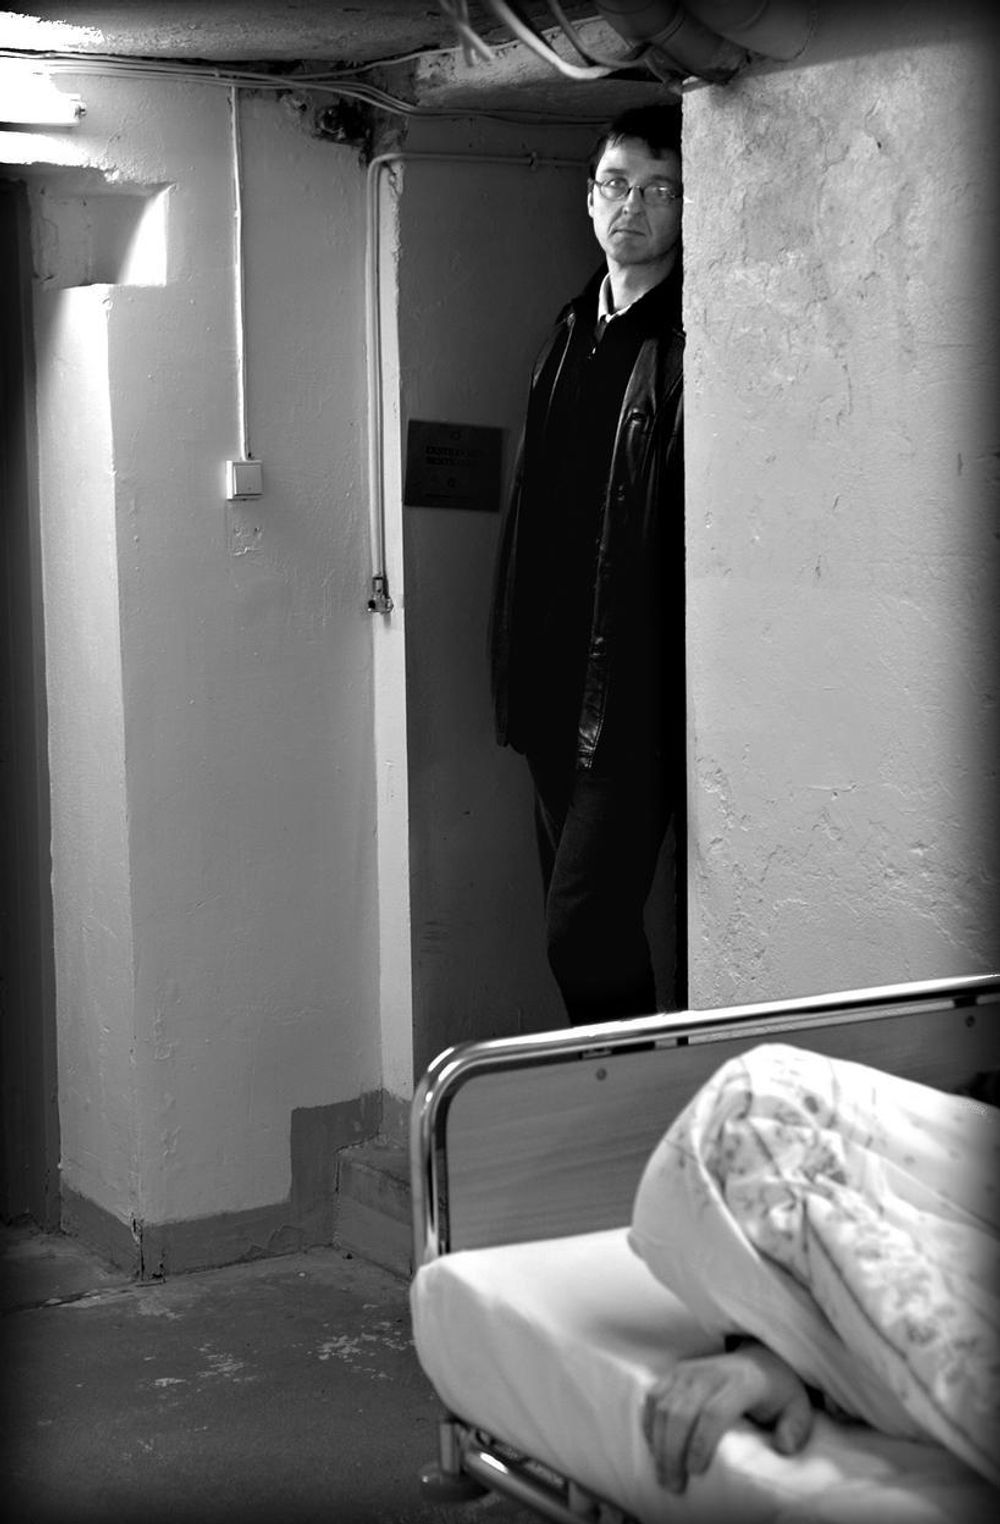 PÅ ÅSTEDET: Forfatteren Tore Oksenholm er her avbildet på åstedet i thrilleren.